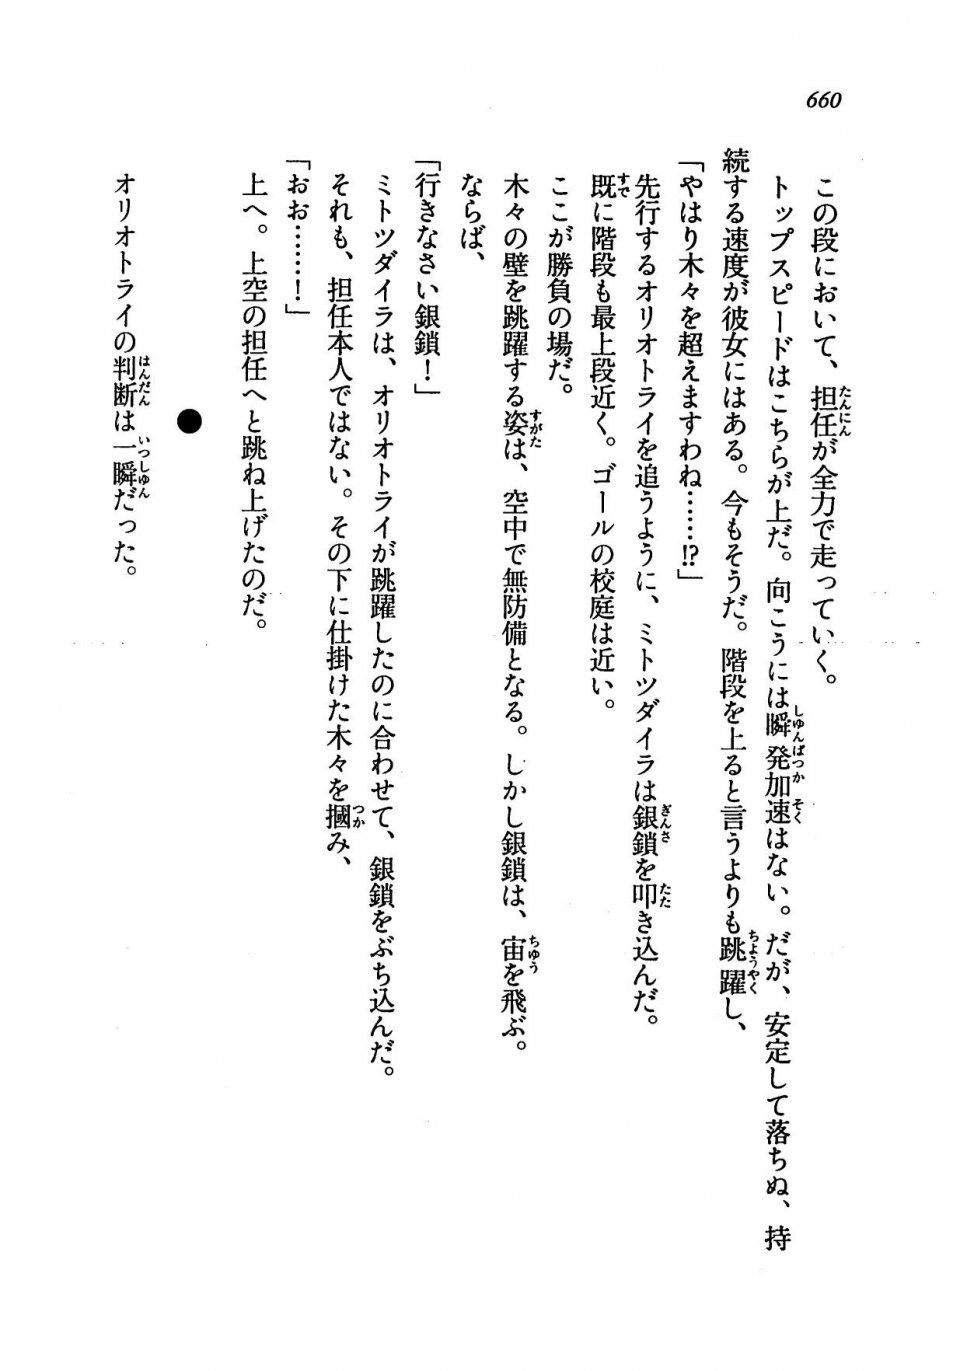 Kyoukai Senjou no Horizon LN Vol 19(8A) - Photo #660